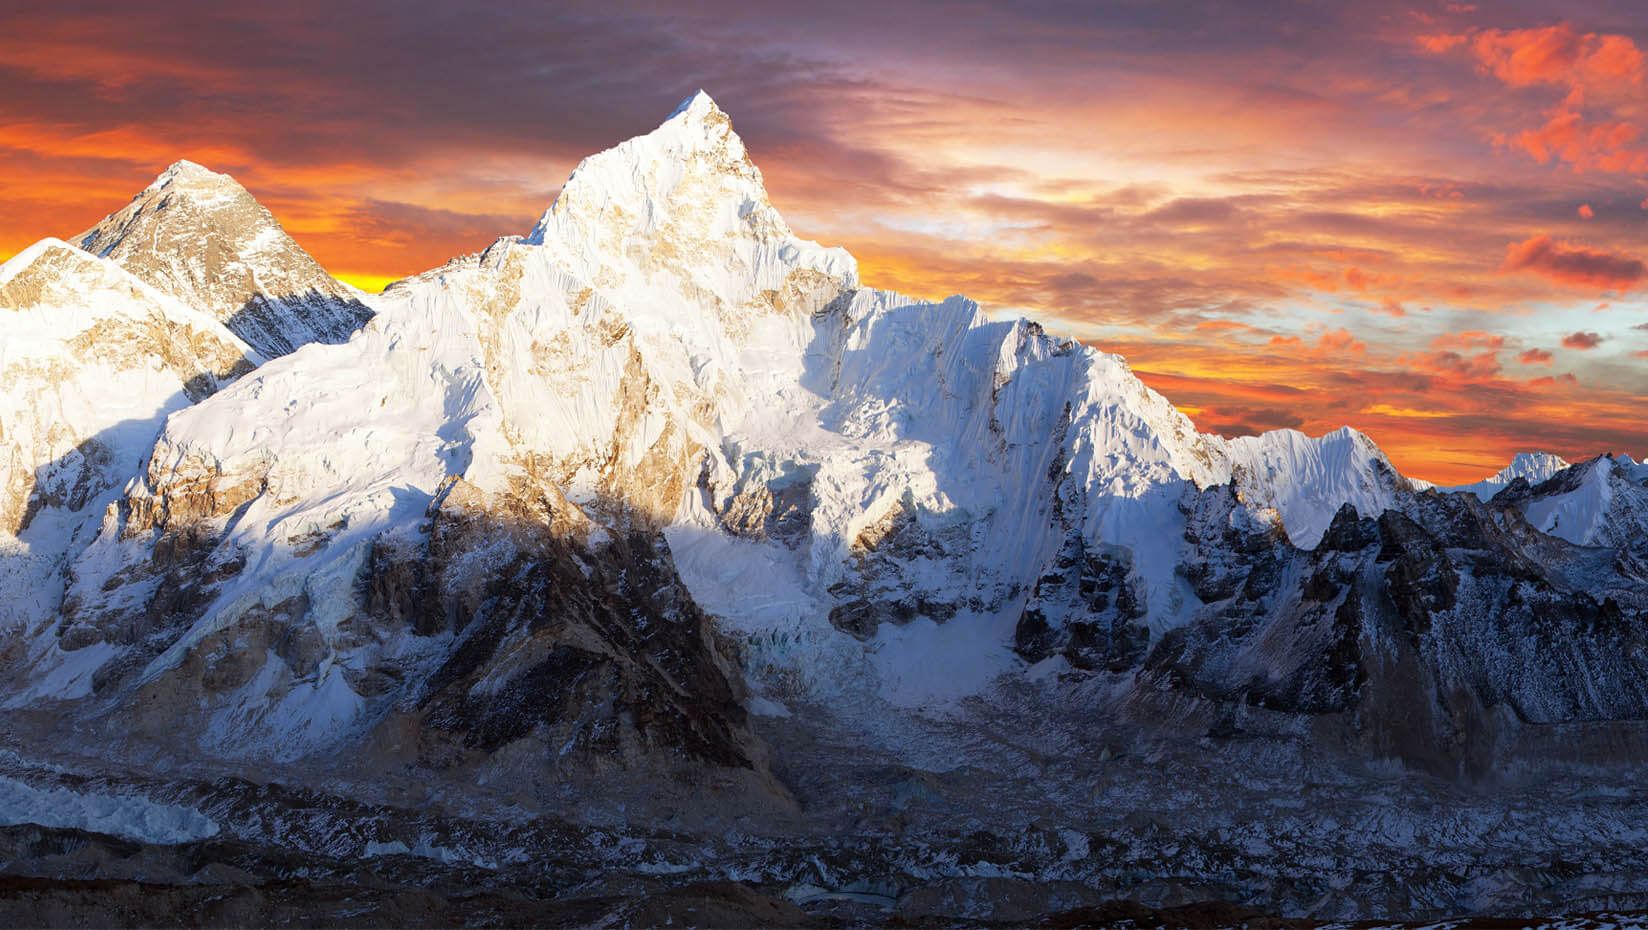 https://umaine.edu/news/wp-content/uploads/sites/3/2020/11/Mount-Everest-news-feature.jpg